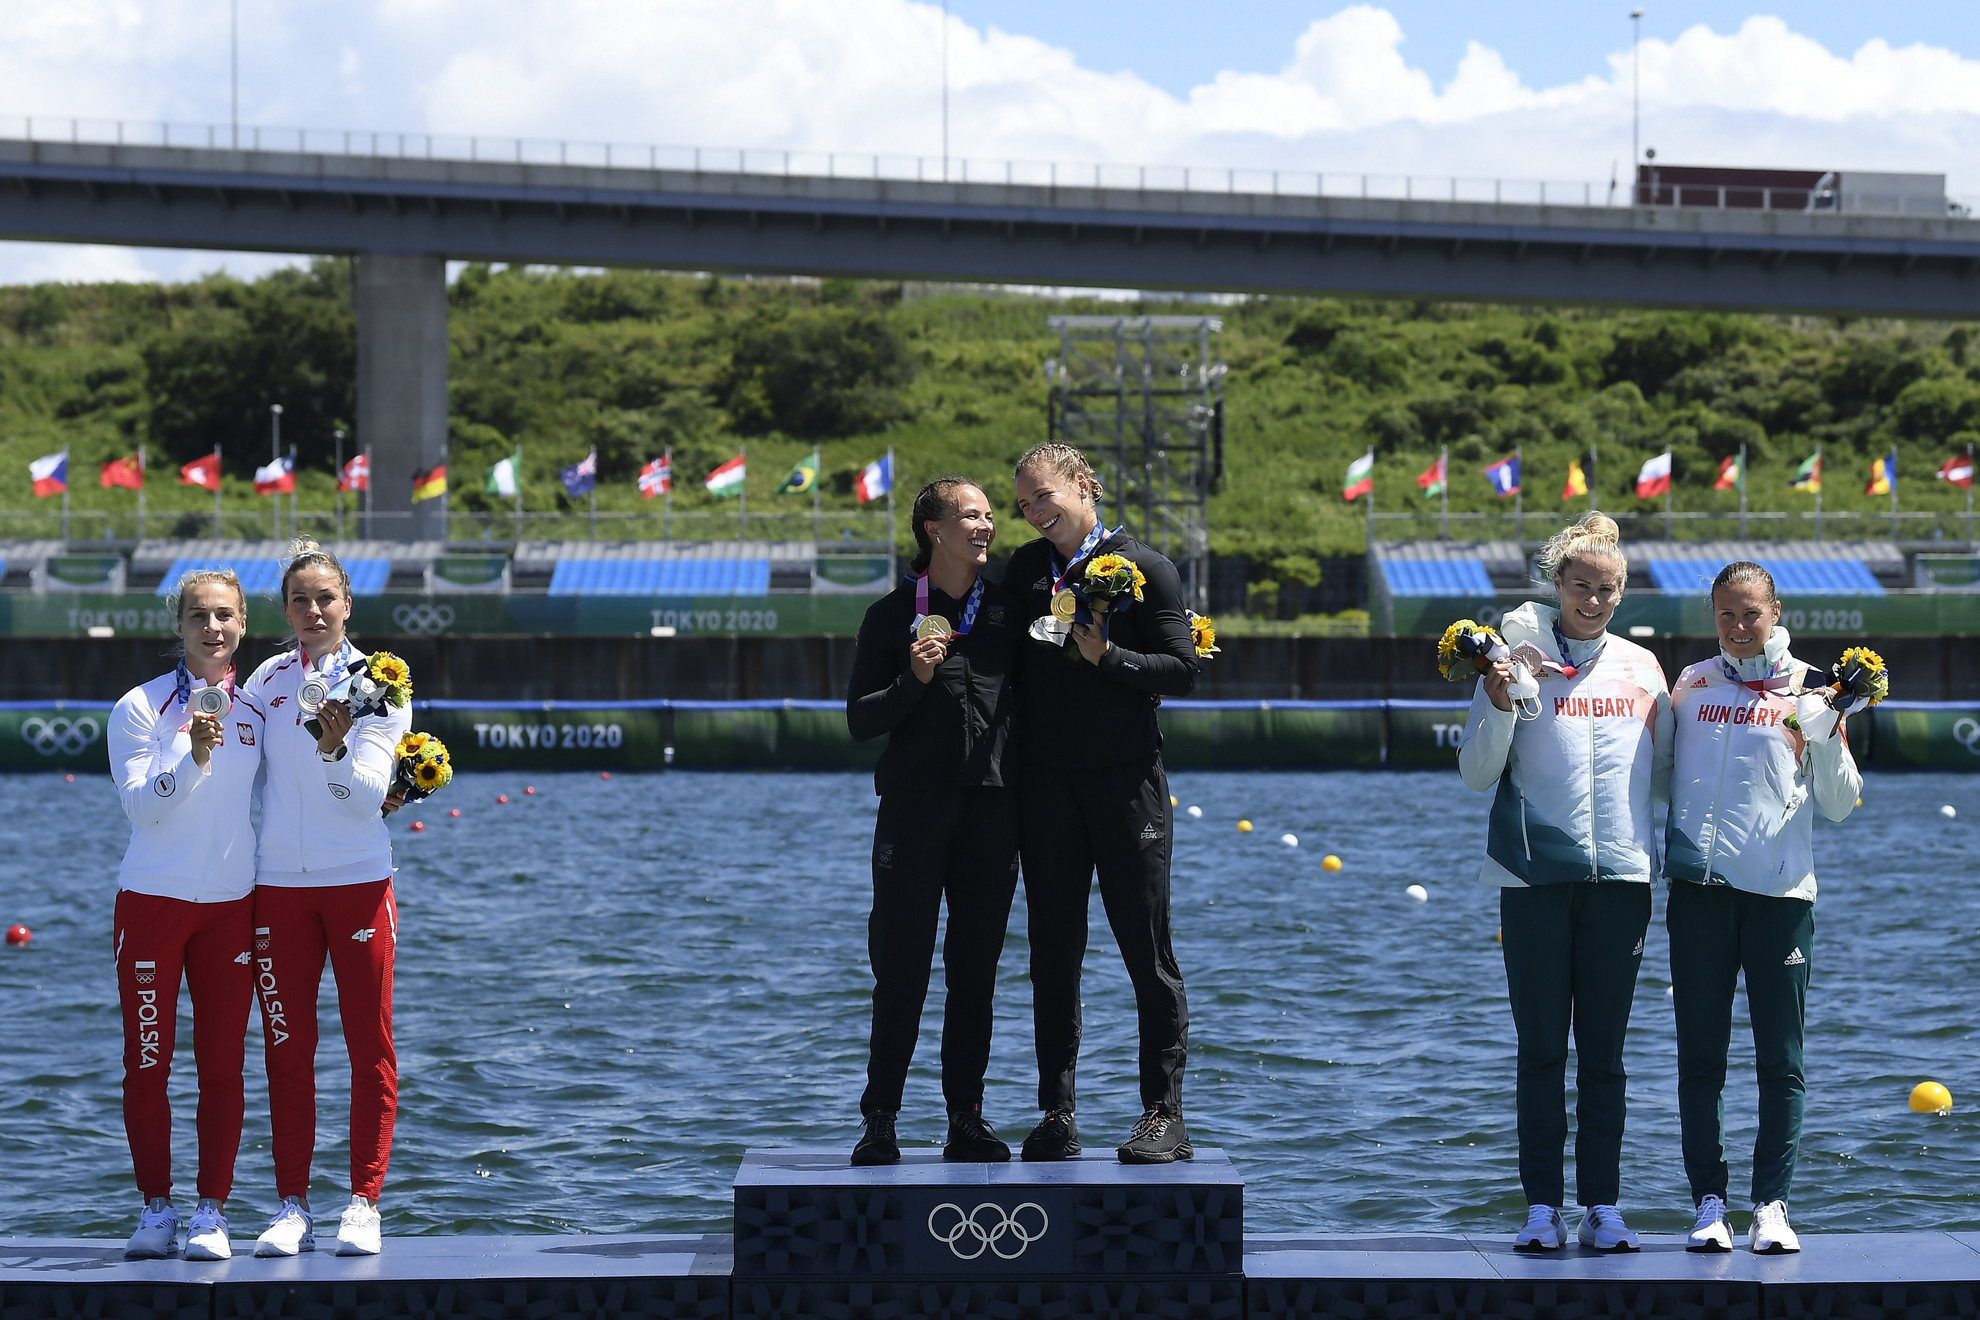 A győztes új-zélandi Lisa Carrington Lisa, Caitlin Regal (középen), a második helyezett lengyel Anna Pulawska és Karolina Naja (b), jobbról a bronzérmes Bodonyi Dóra (b) és Kozák Danuta a női kajak párosok 500 méteres versenyének eredményhirdetésén a világméretű koronavírus-járvány miatt 2021-re halasztott 2020-as tokiói nyári olimpián a Sea Forest Kajak-kenu Pályán 2021. augusztus 3-án